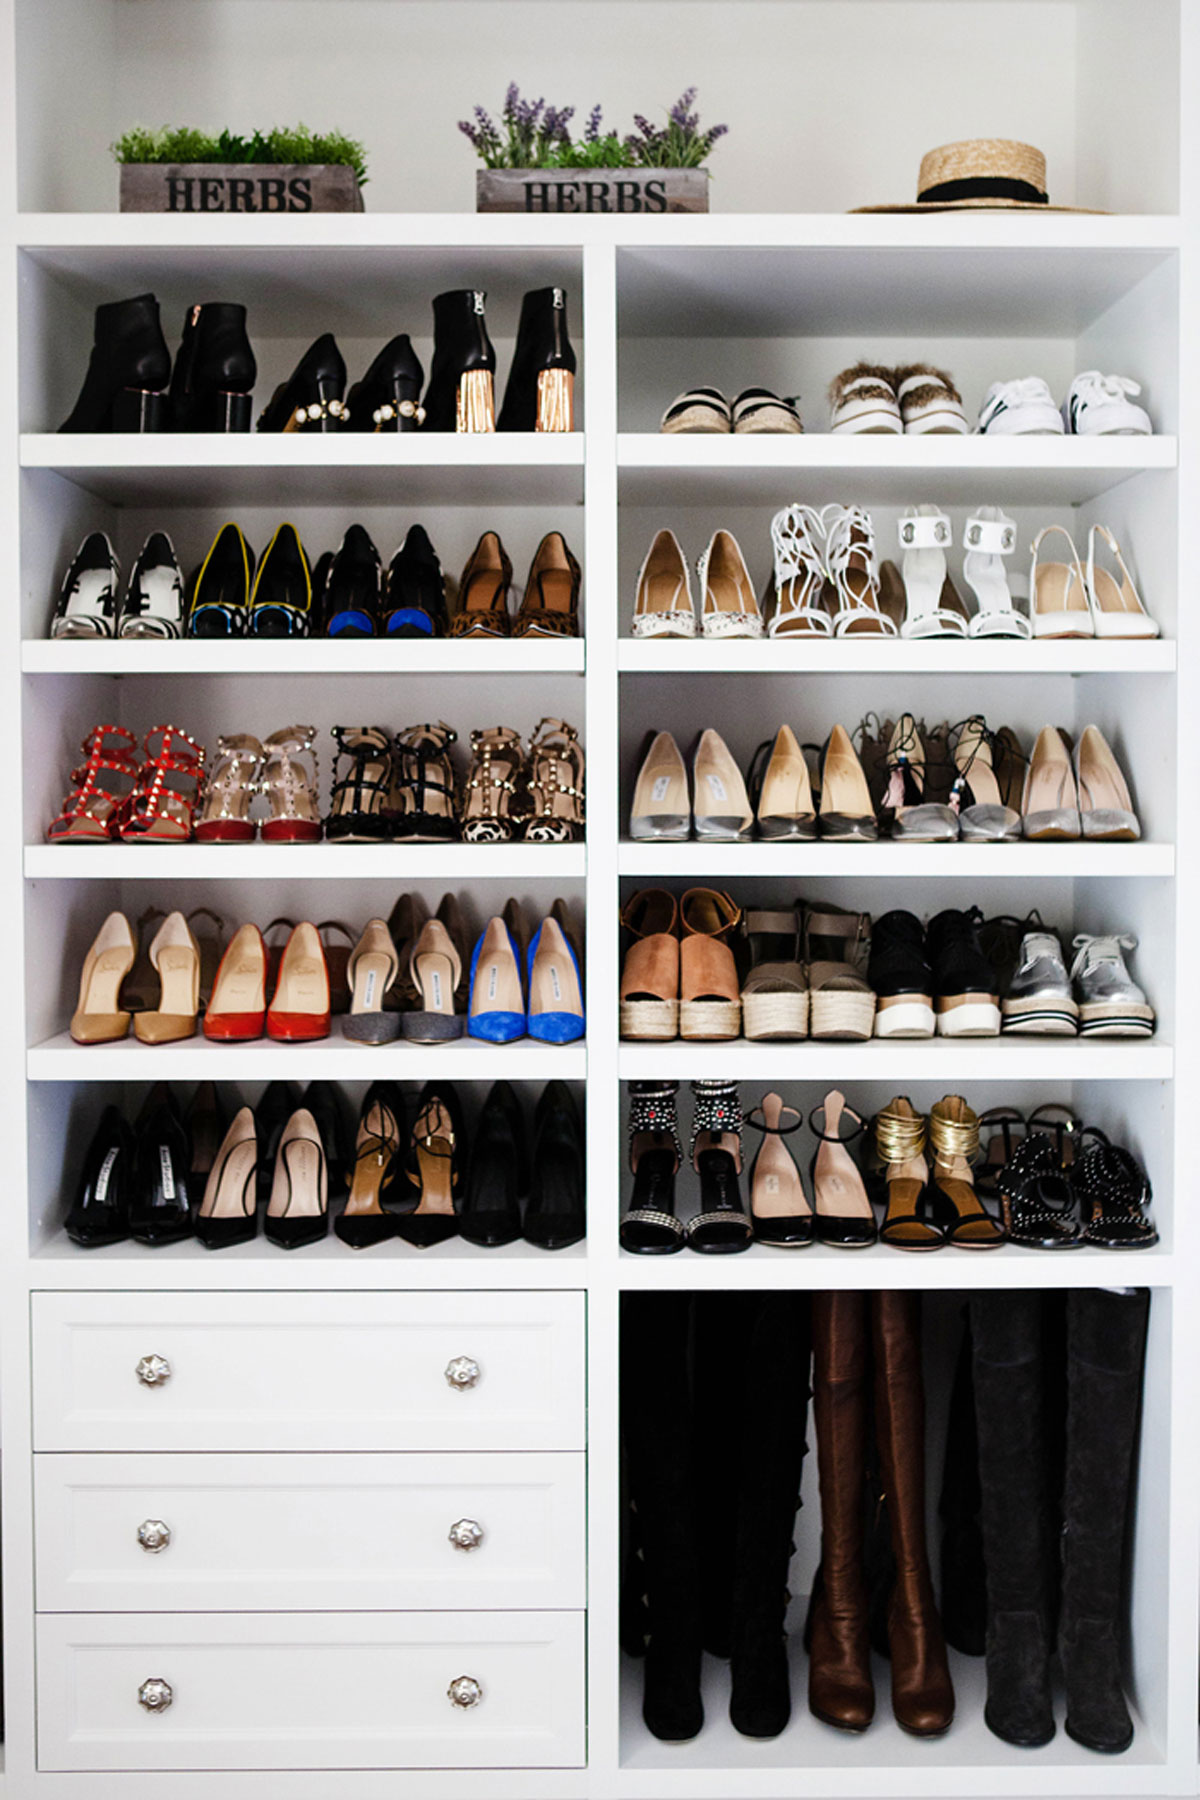 imelda marcos shoes closet